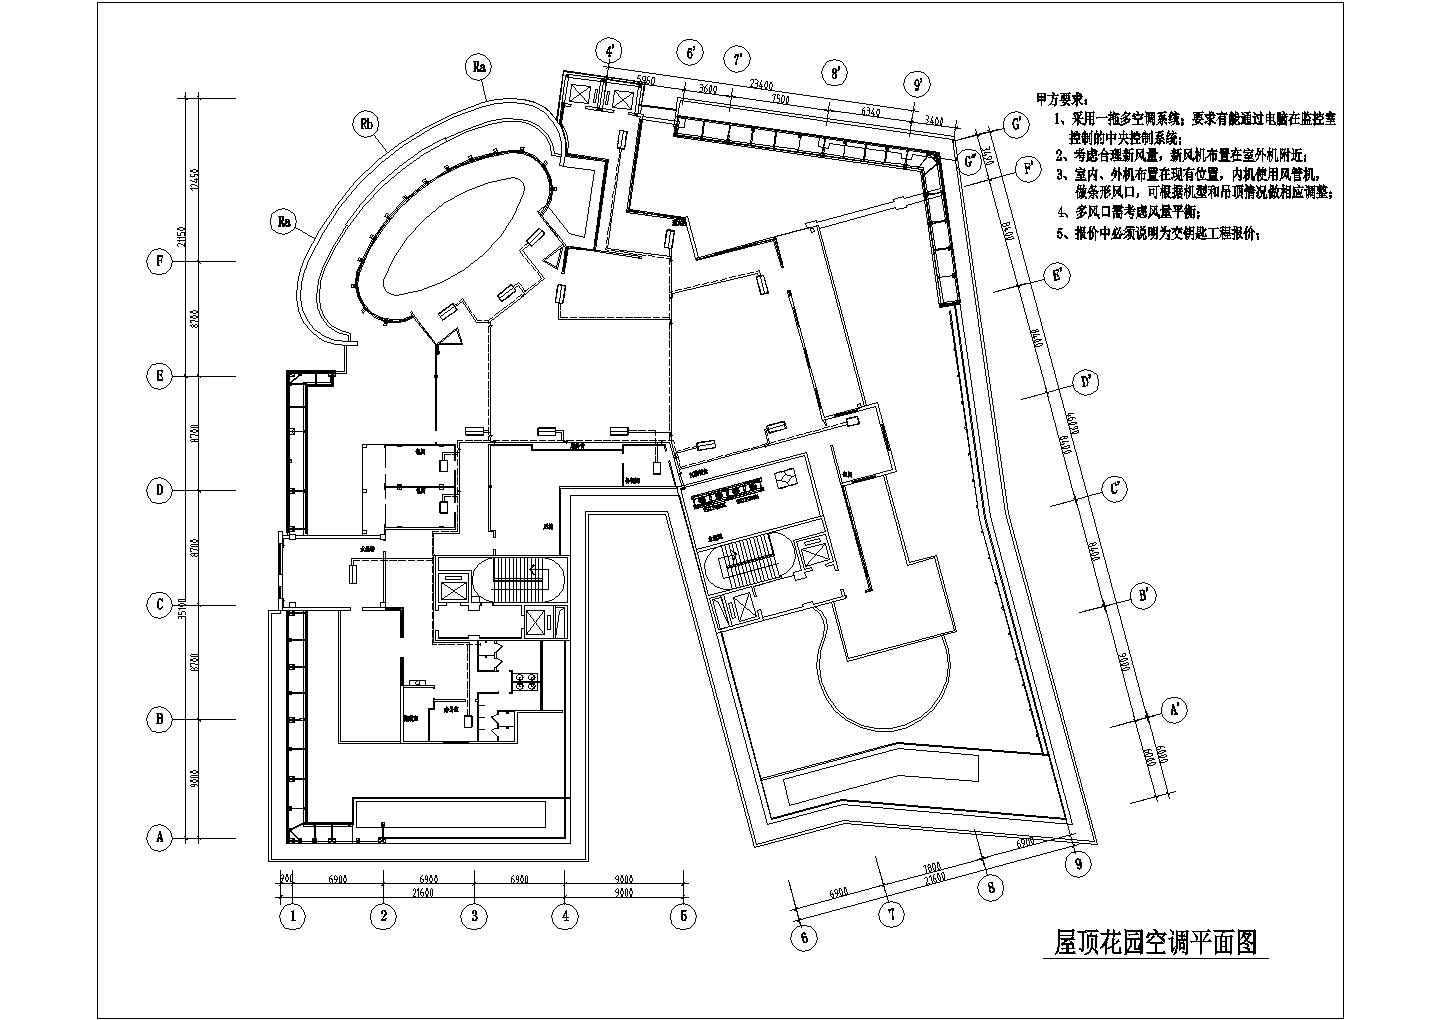 北京市顺义区某高层写字楼屋顶景观花园空调平面设计CAD图纸